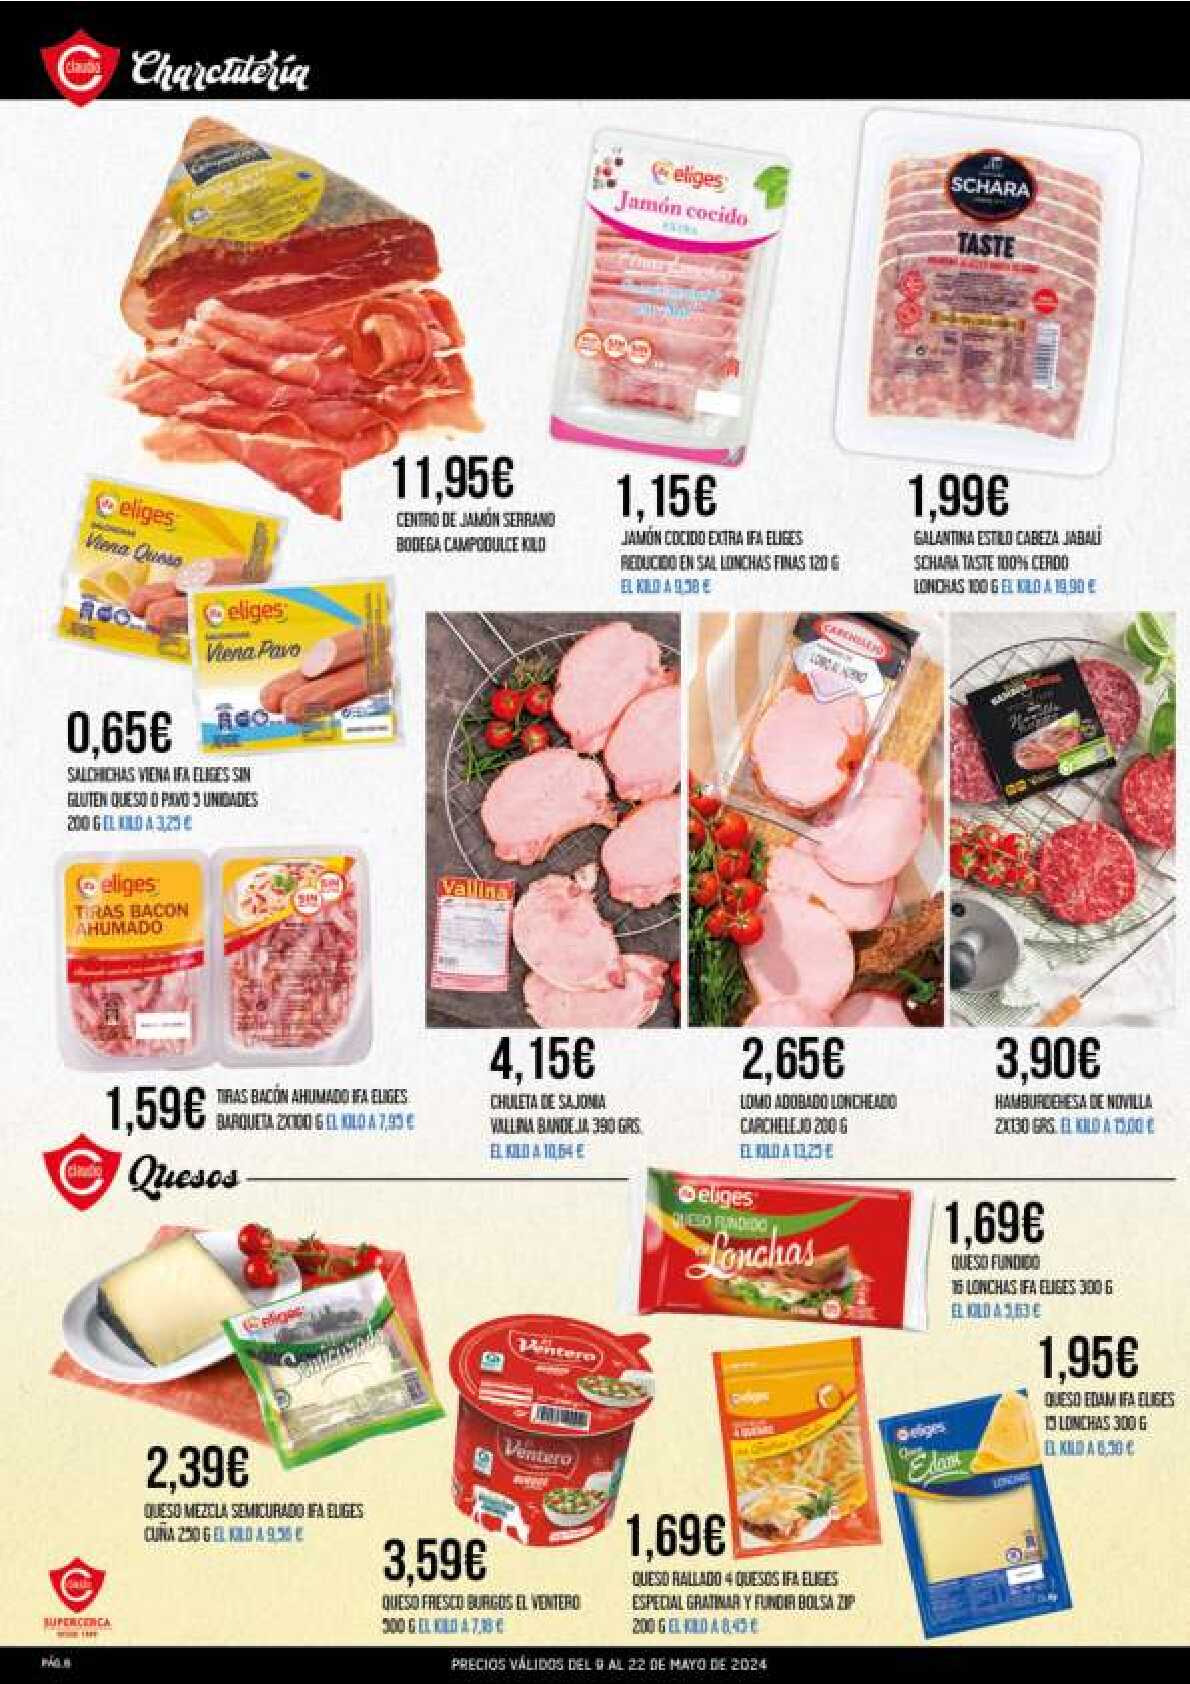 Ofertas quincenales Supermercado Claudio. Página 06